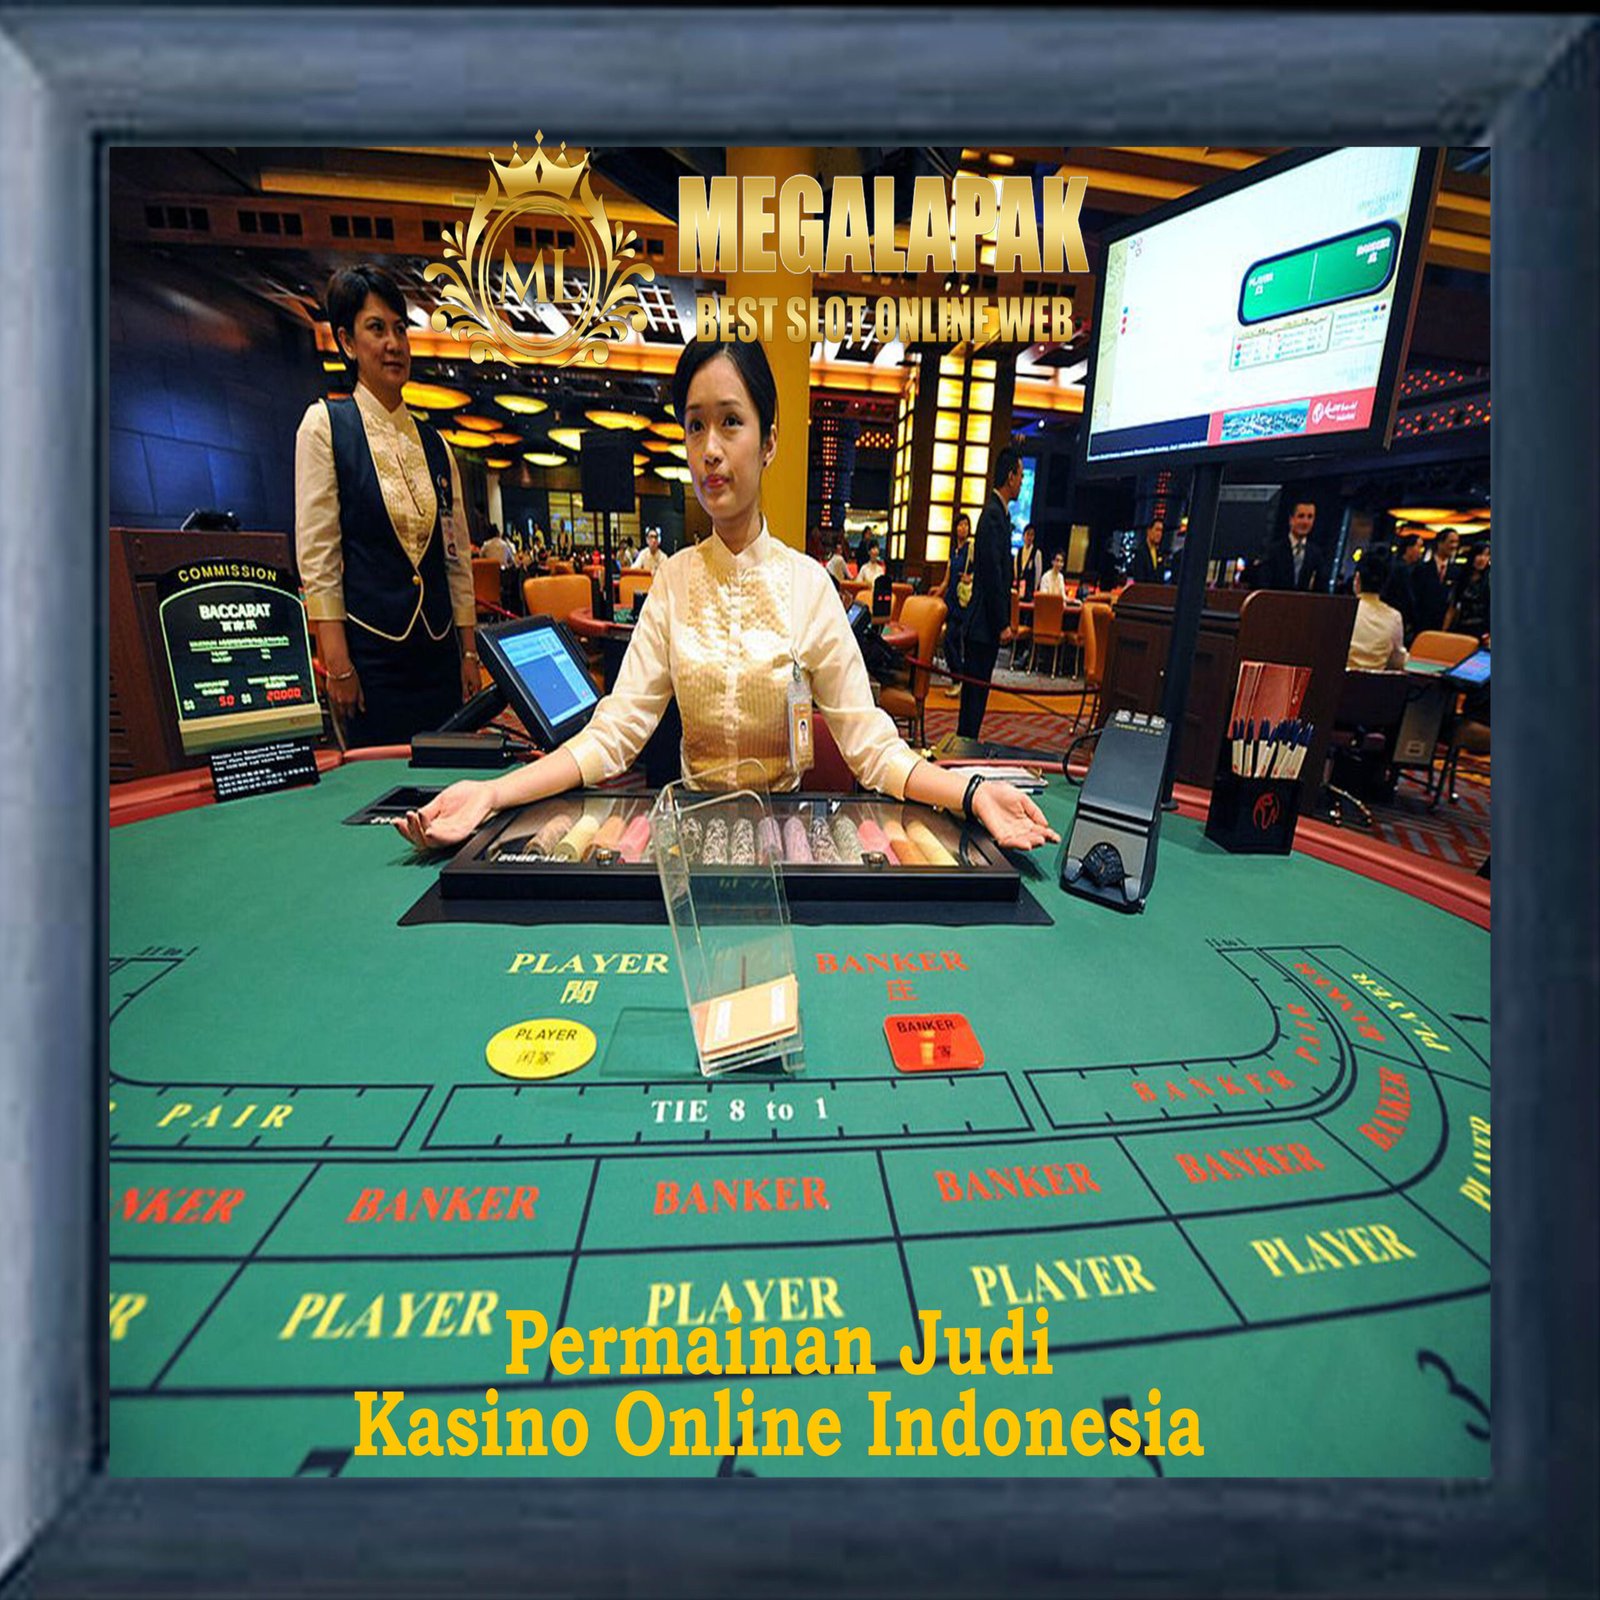 Permainan Judi Kasino Online Indonesia Megalapak